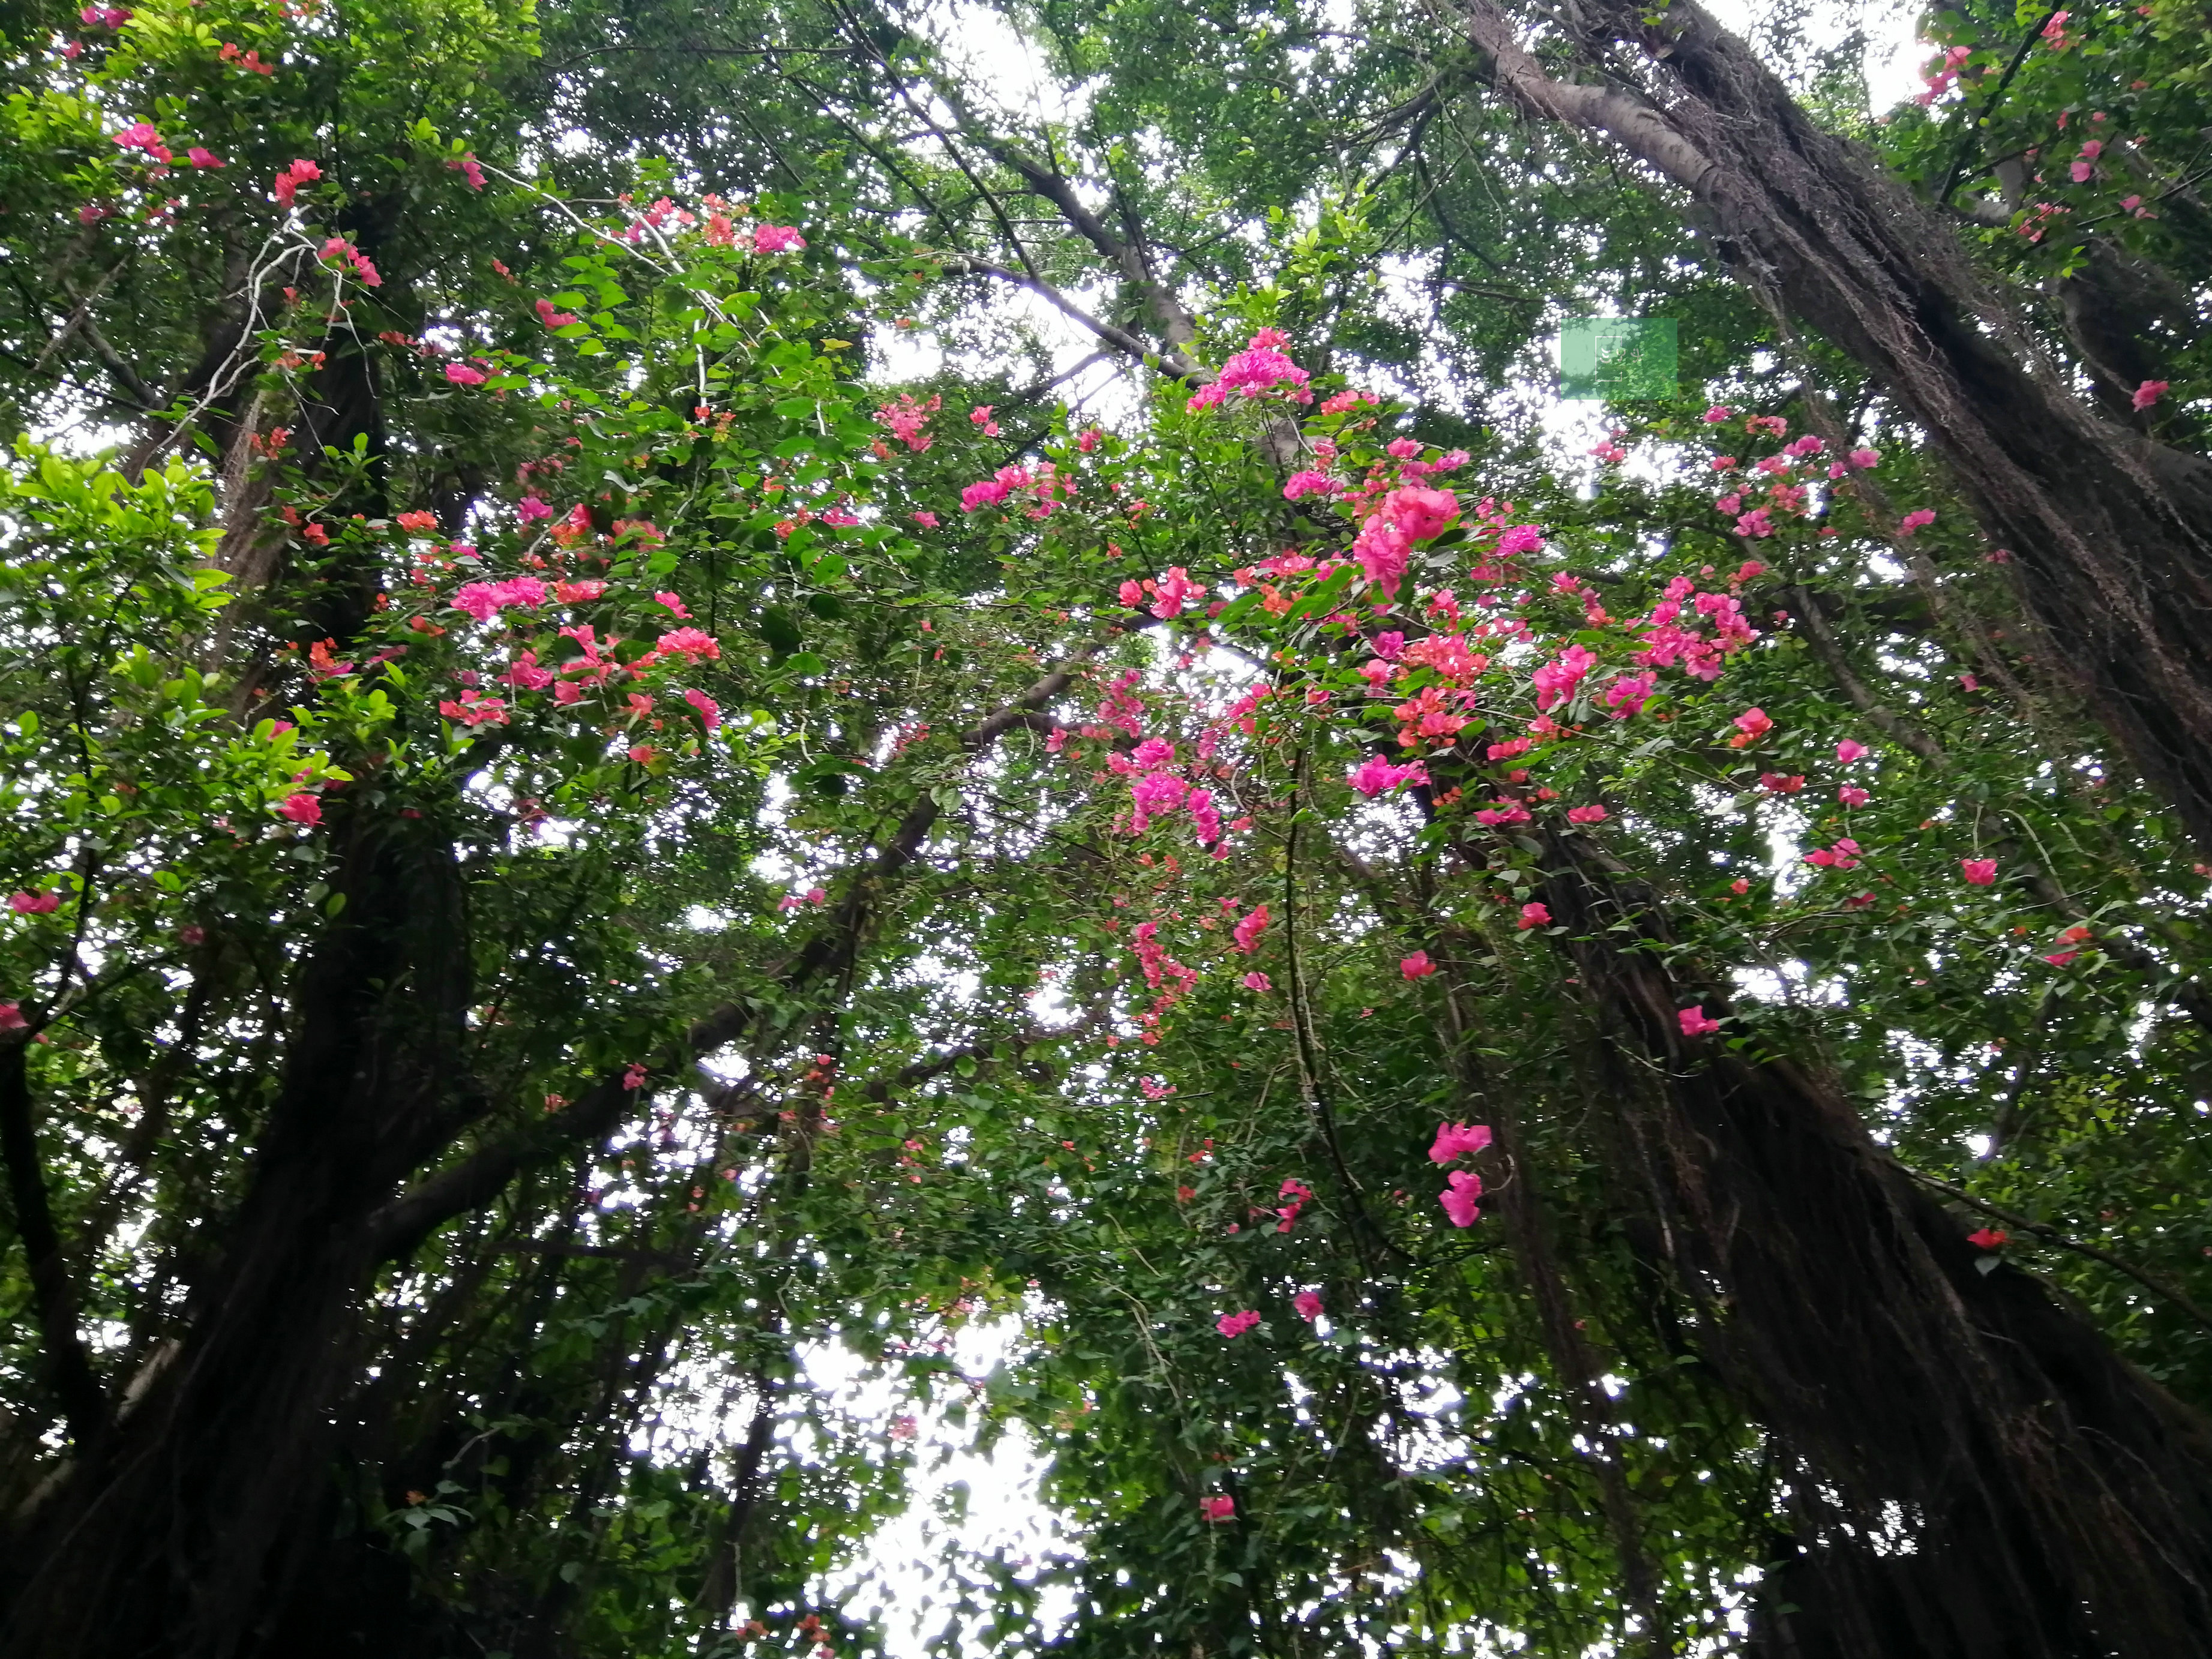 咦广州老街高高榕树上竟然开大片粉红花儿怎么回事